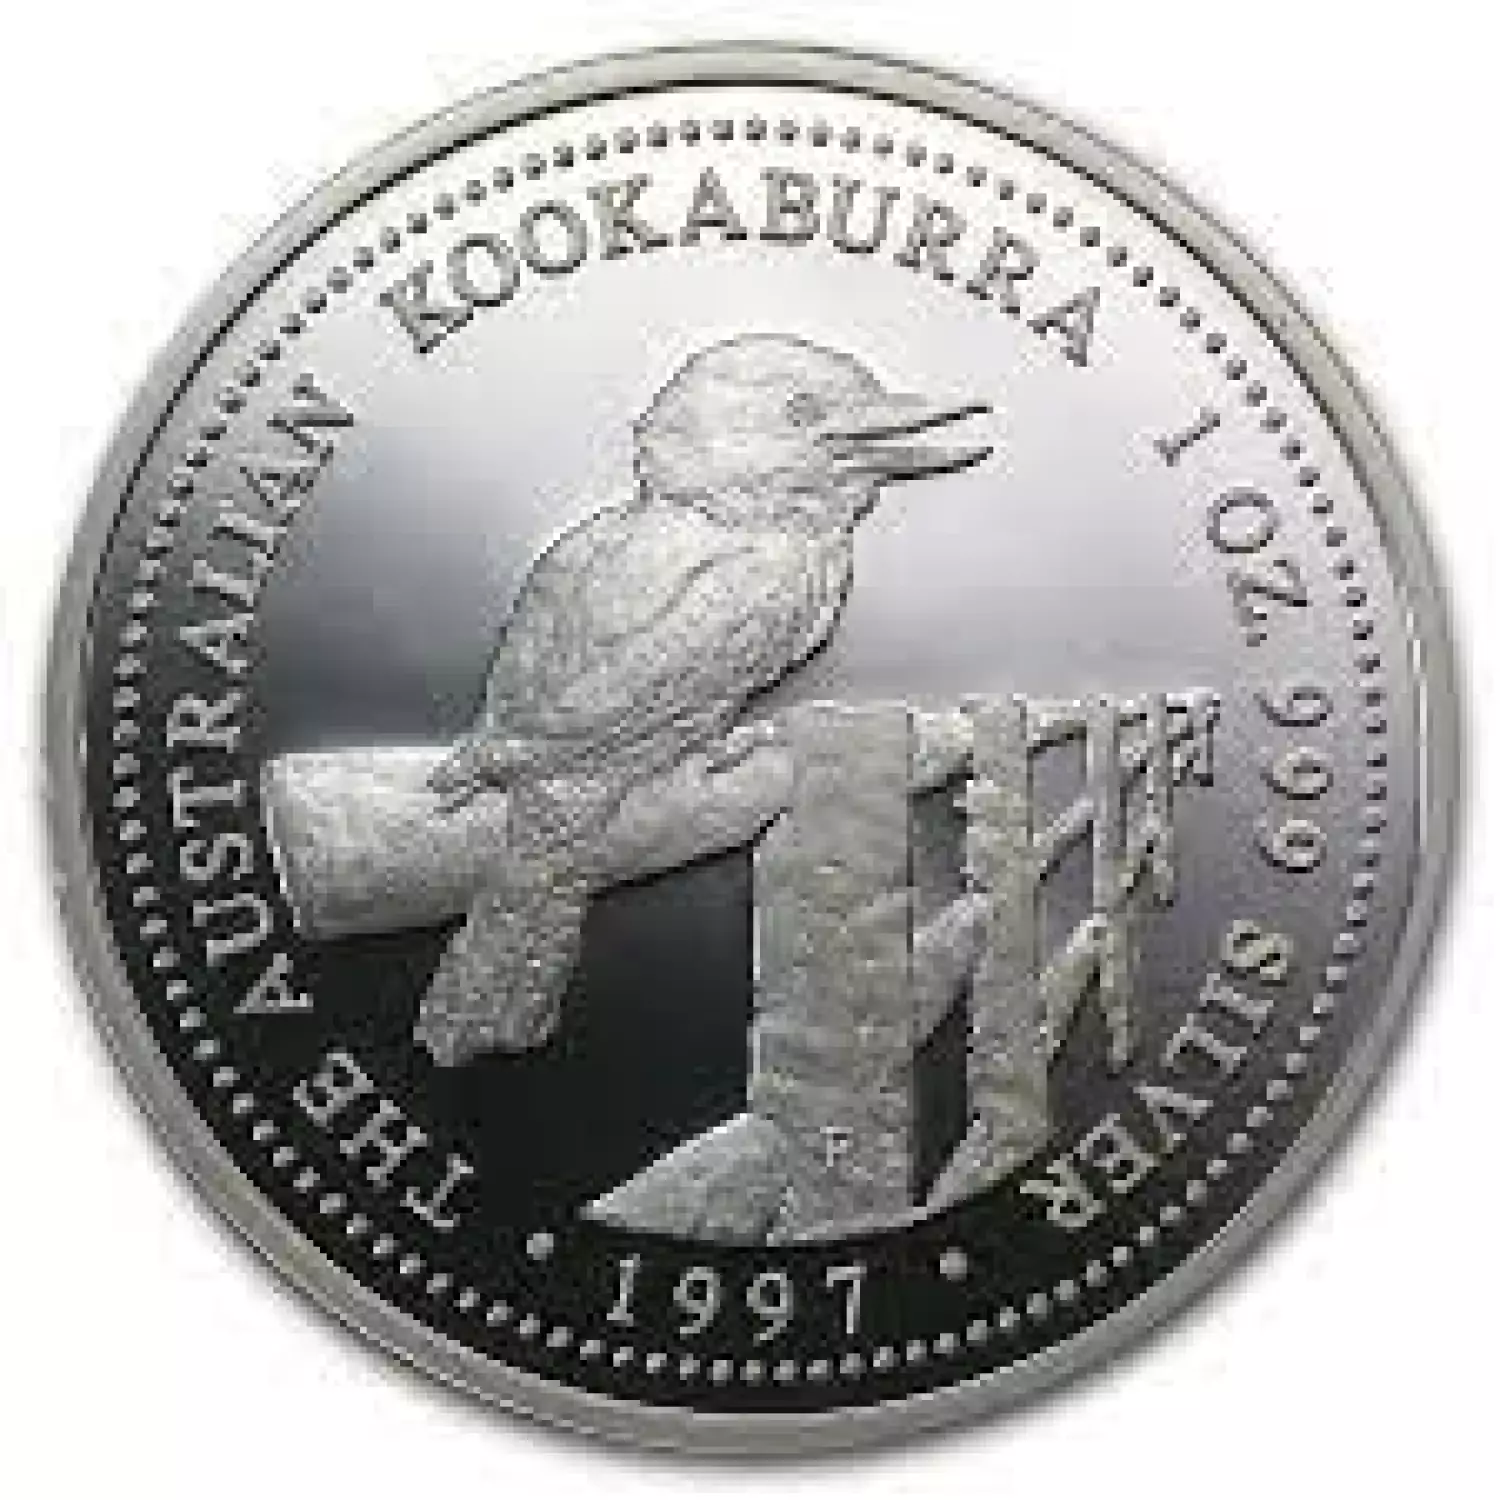 1997 1oz Australian Perth Mint Silver Kookaburra (2)